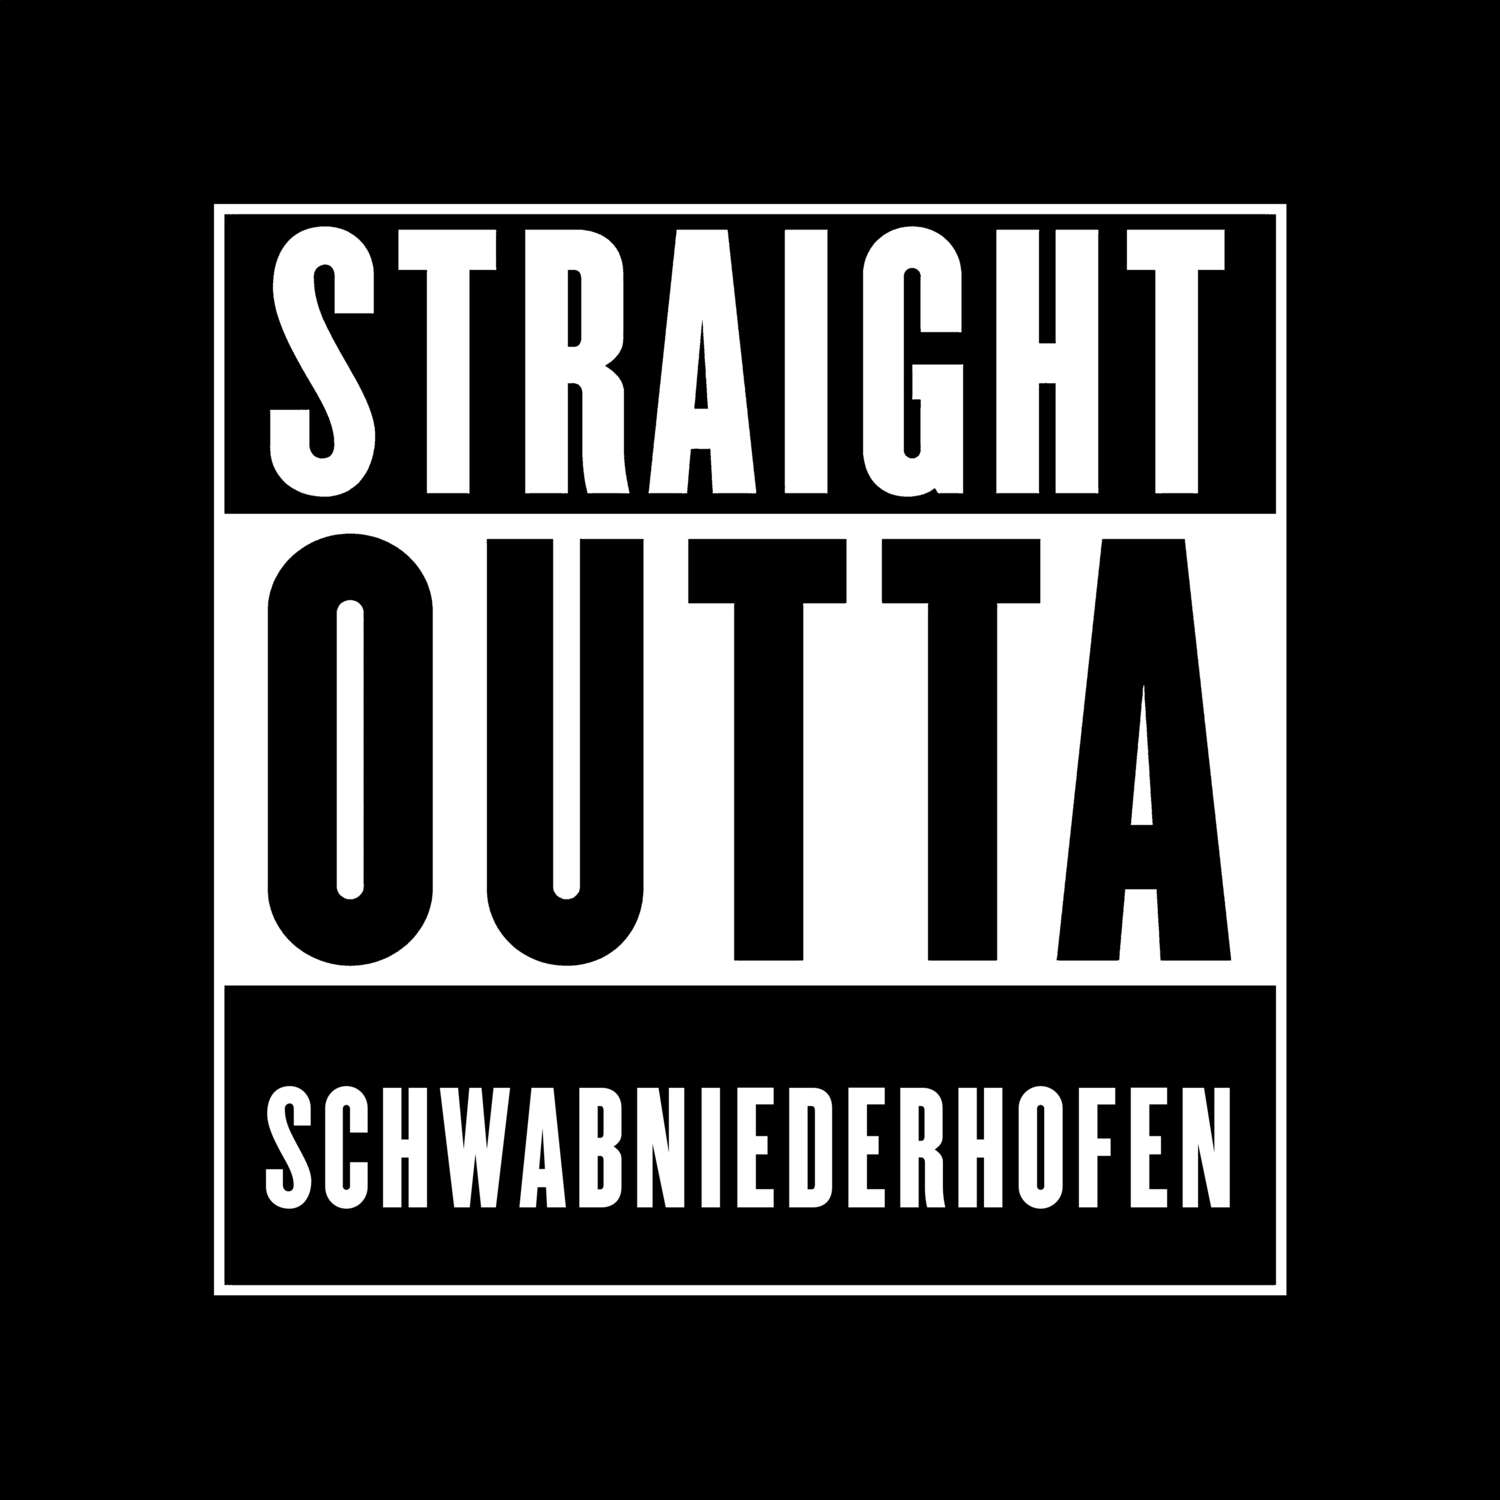 Schwabniederhofen T-Shirt »Straight Outta«